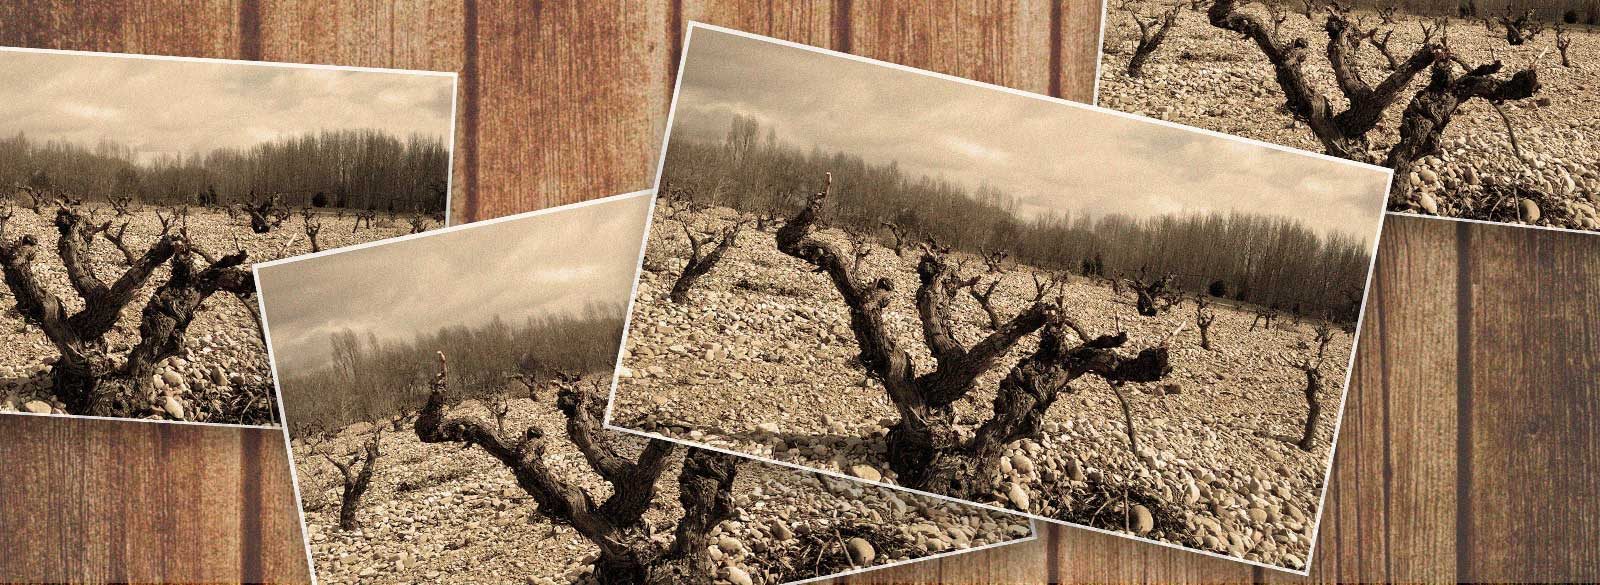 La conexión con la historia de las viñas viejas